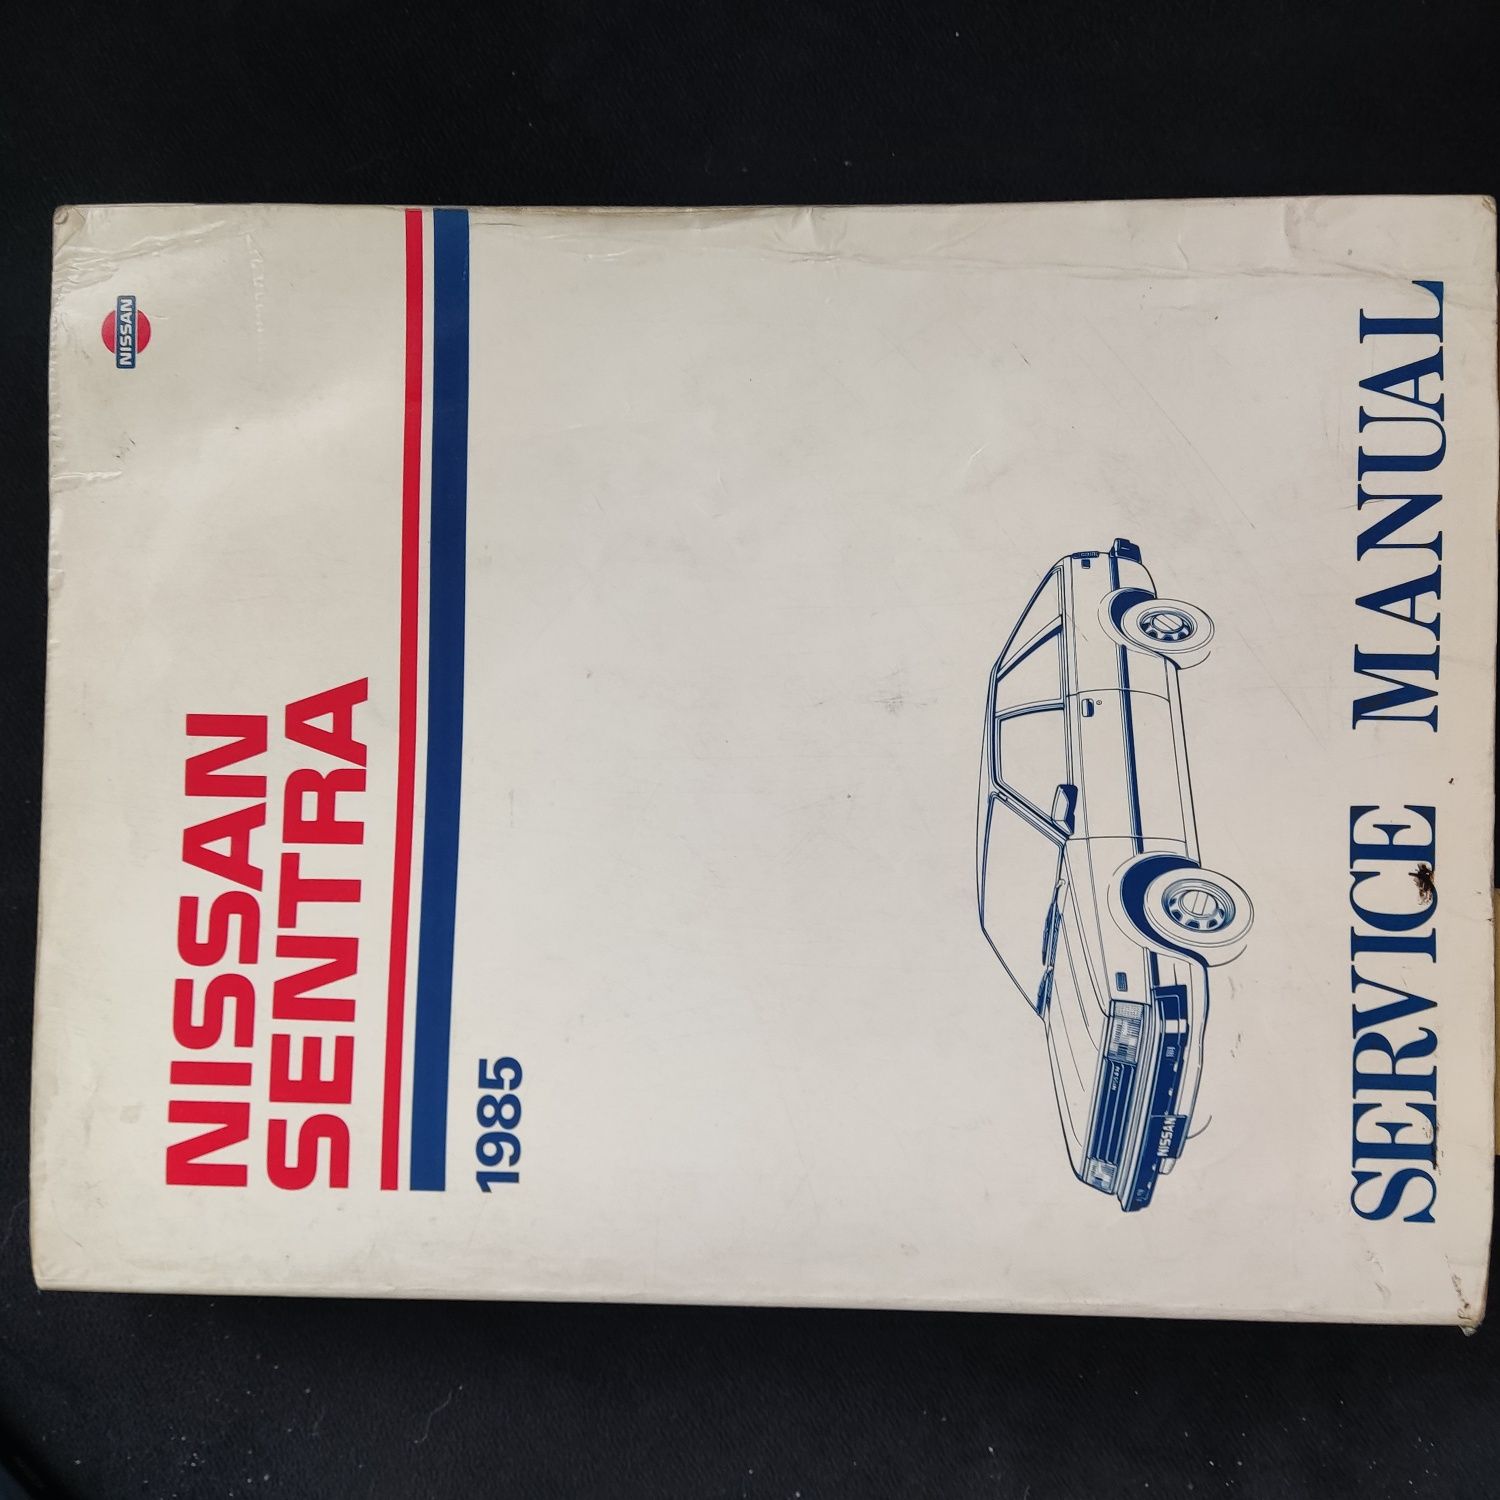 Instrukcja Nissan Sentra 1985r angielska